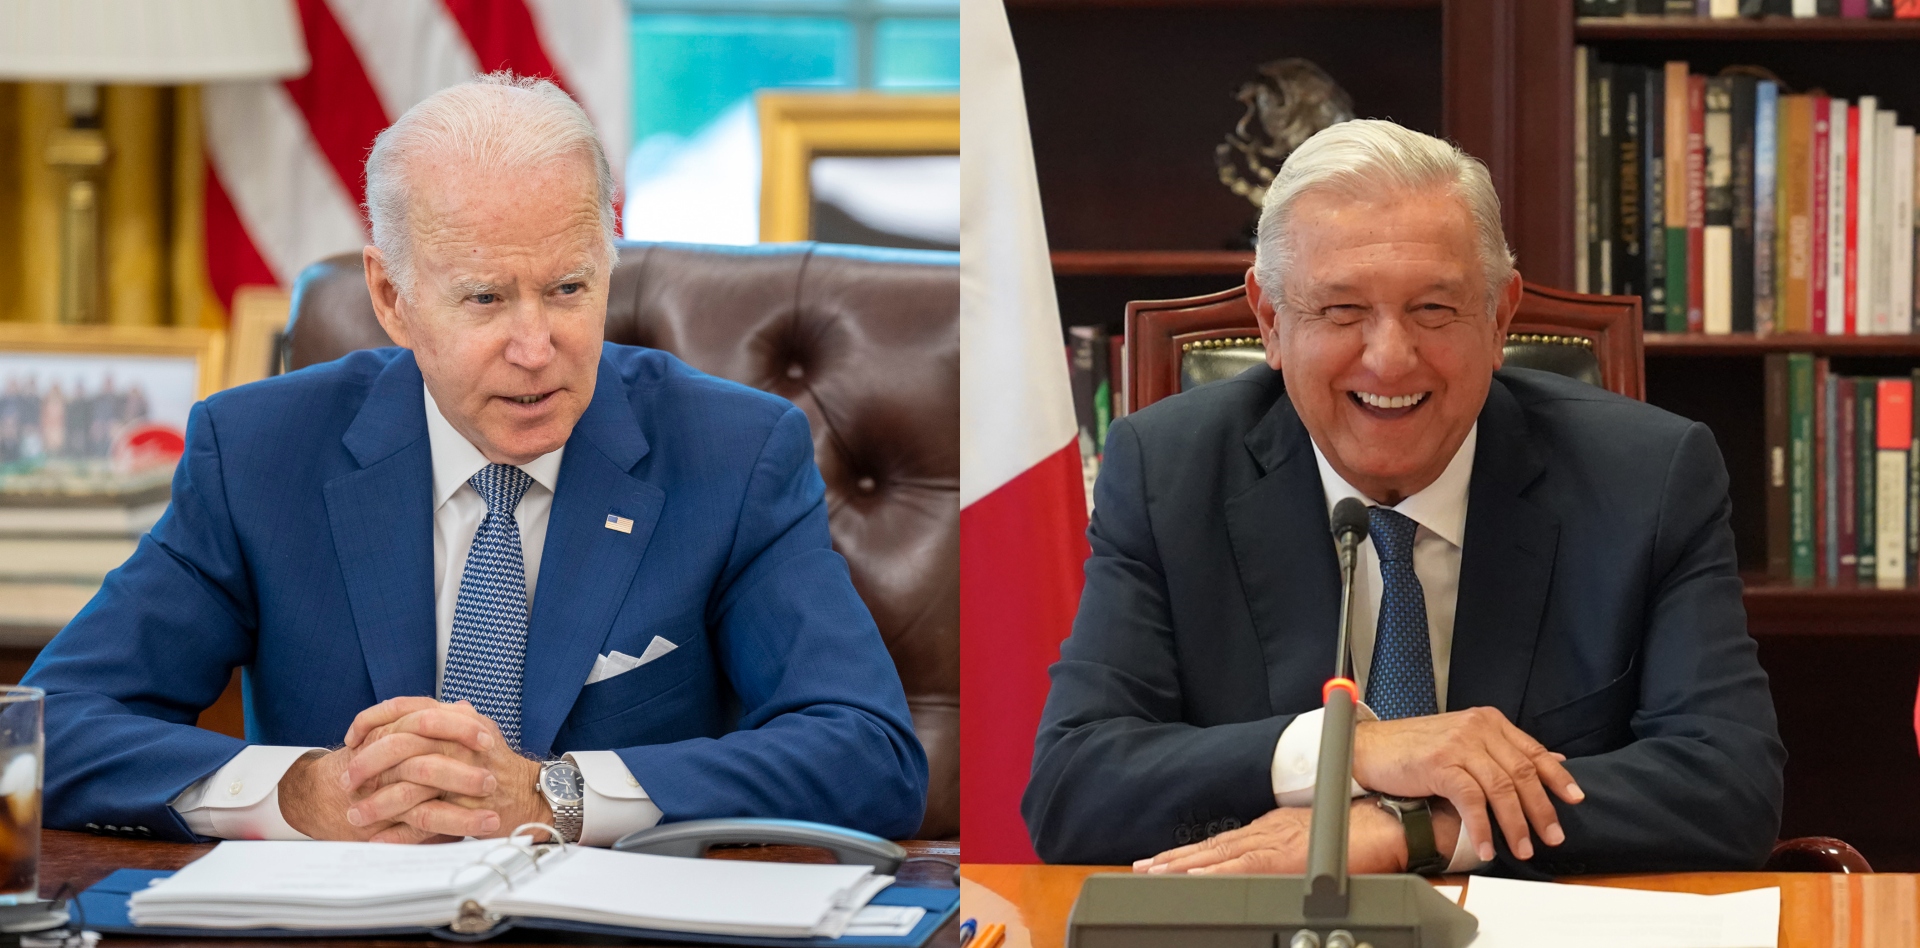 El mandatario mexicano envió una carta a Joe Biden para corroborar que existe buena relación entre ambas naciones  (Fotos: Twitter)